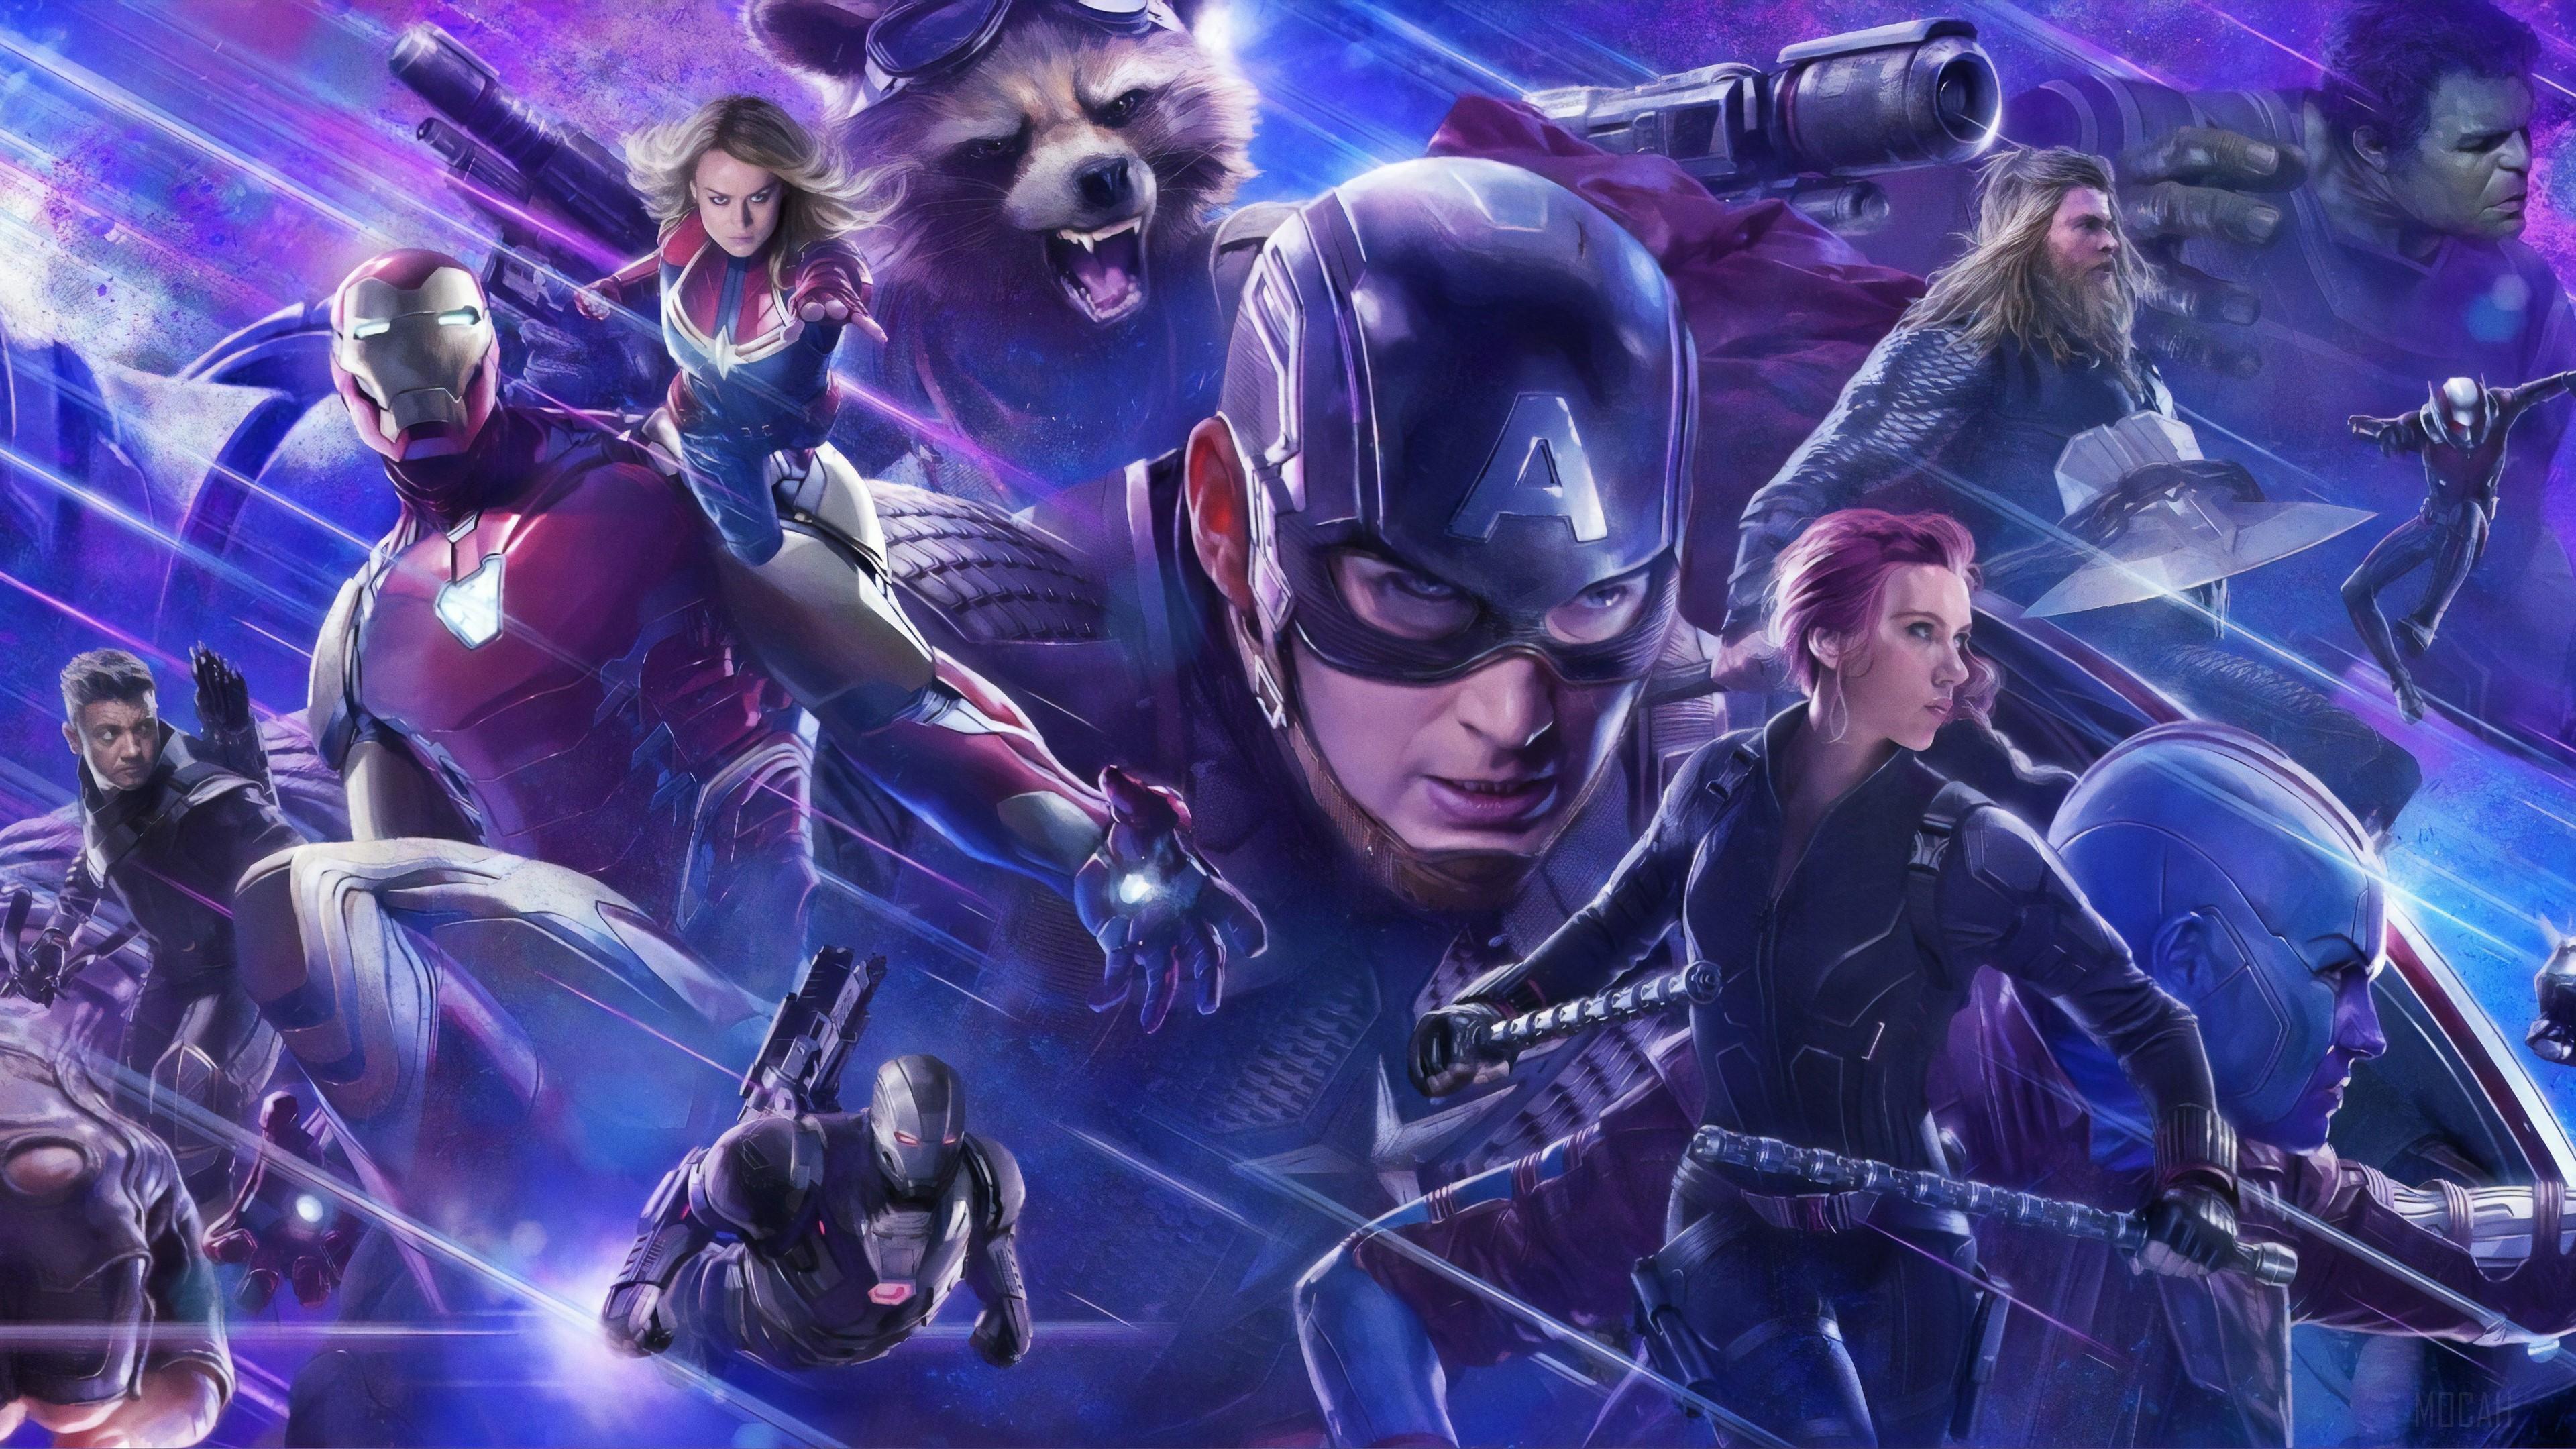 HD wallpaper, 4K Avengers Endgame 2019 4K